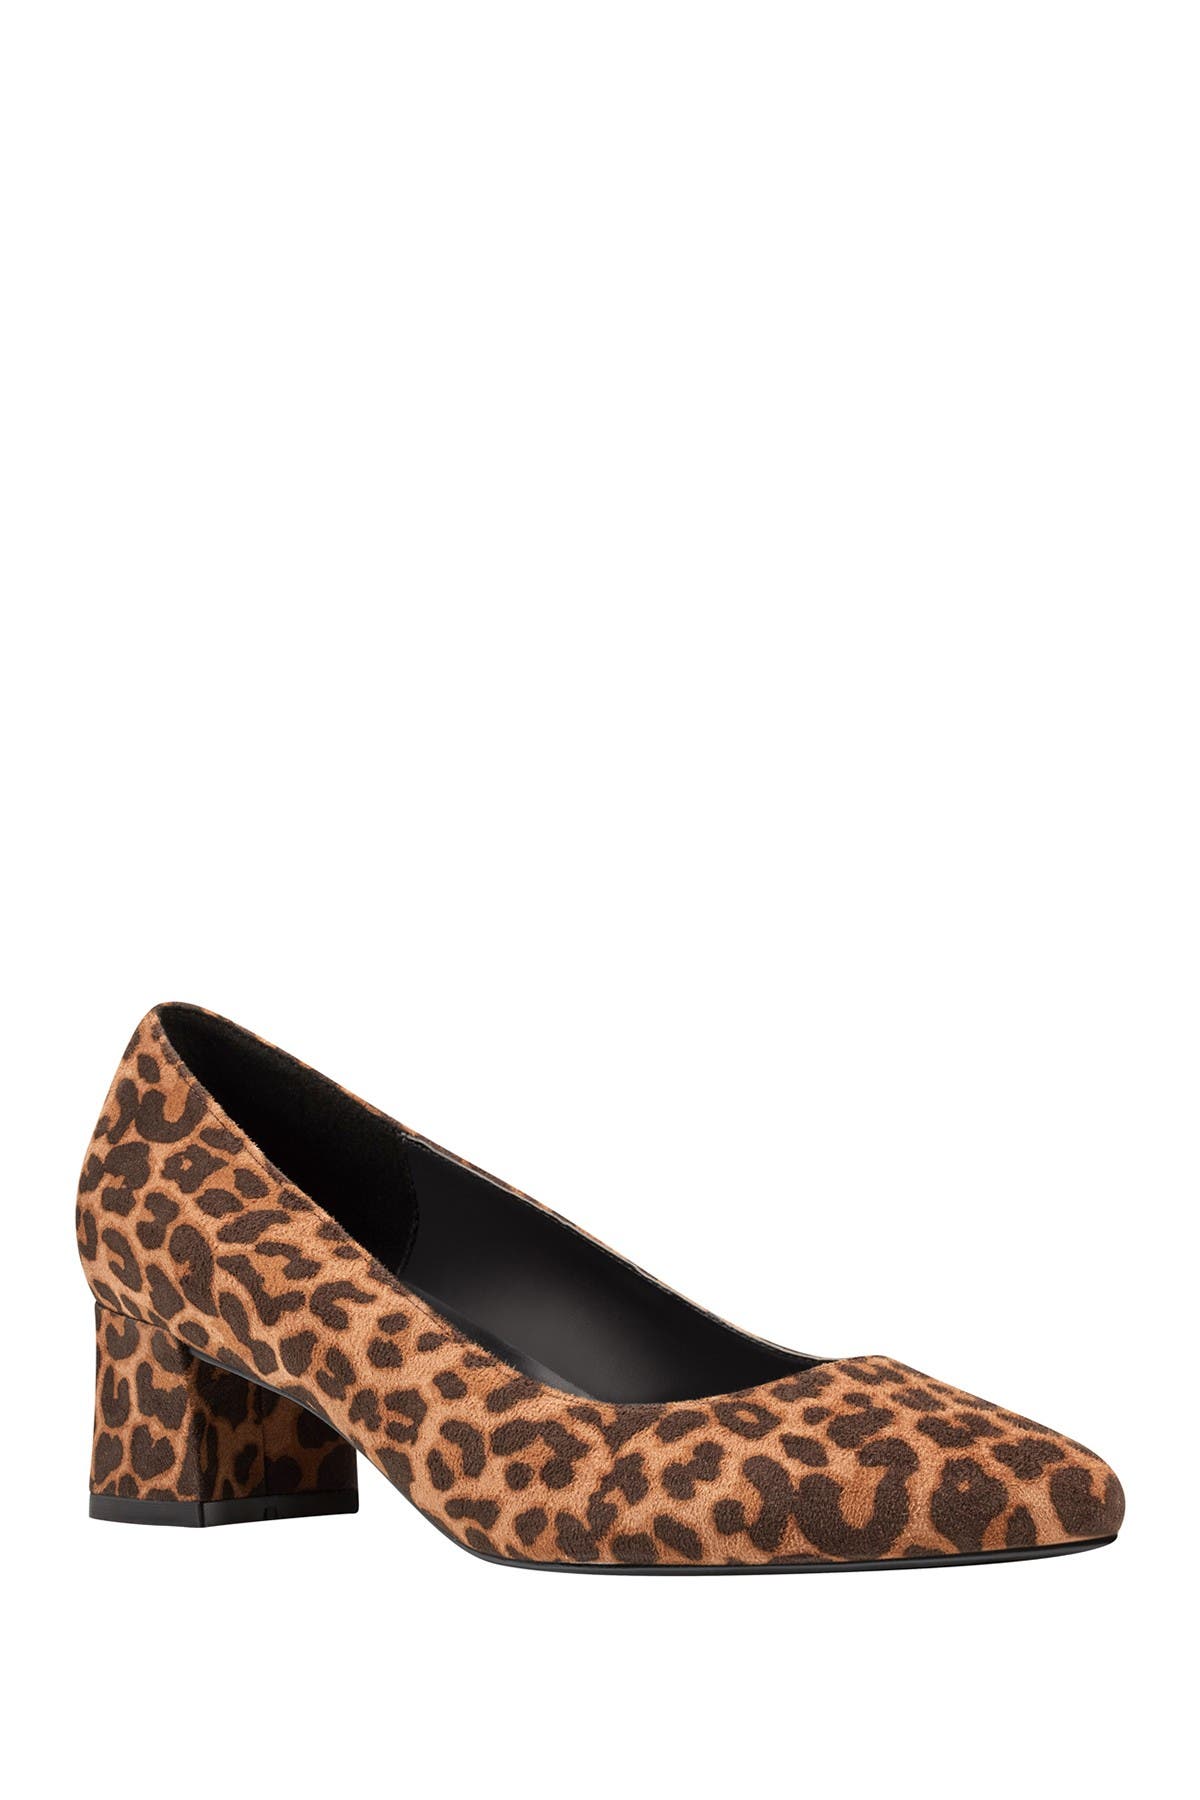 nordstrom leopard heels